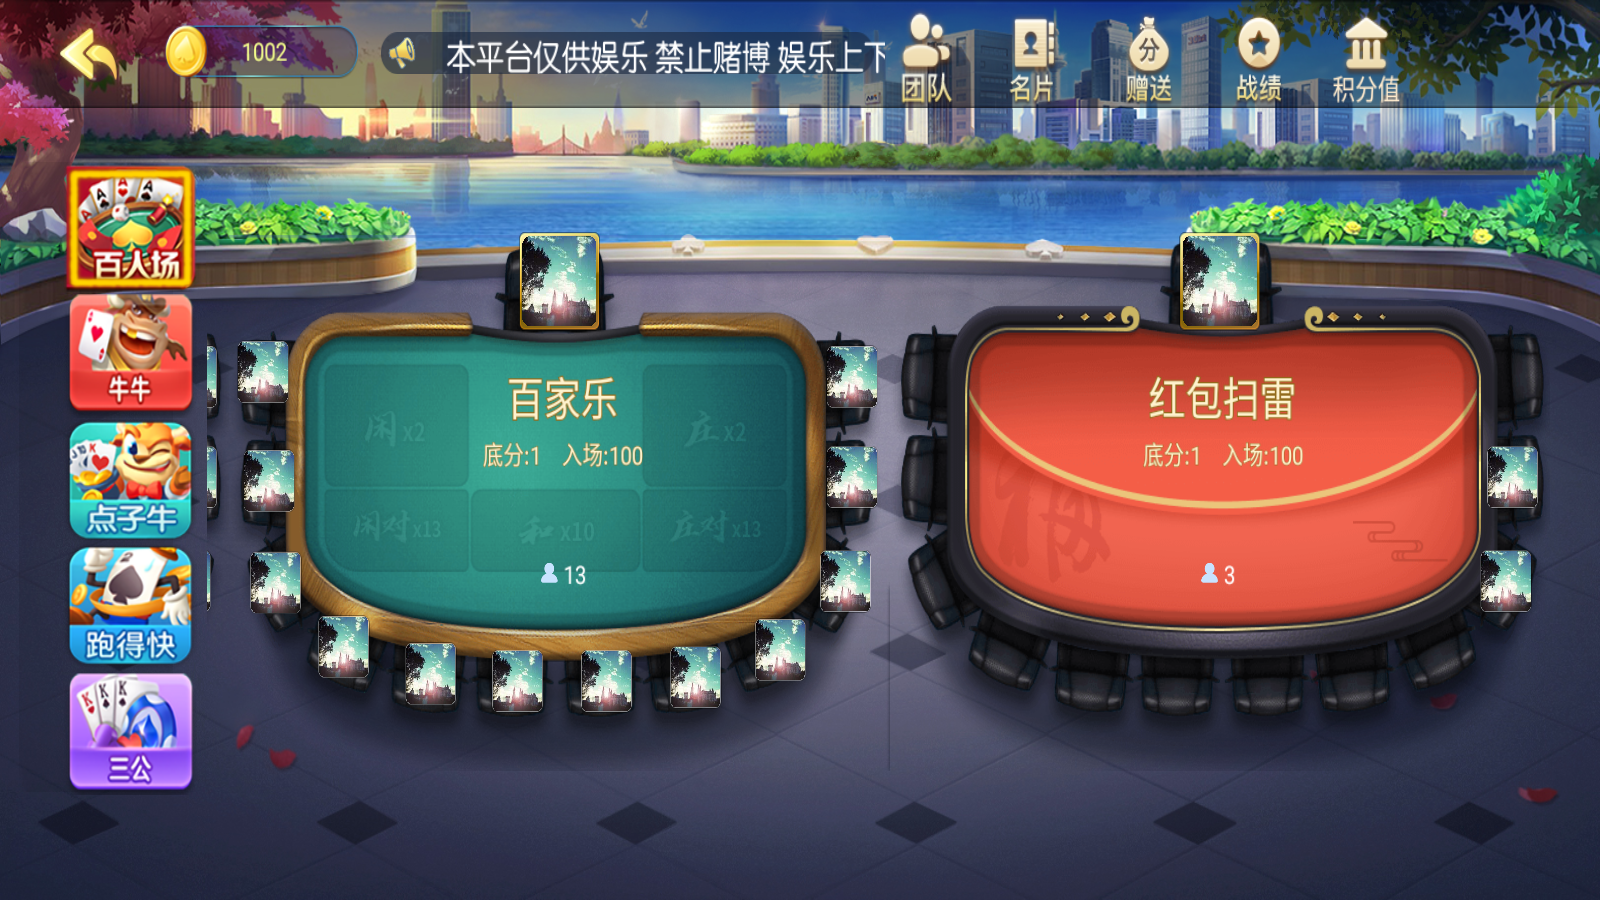 新版五游大联盟运营版棋牌组件 UI美观大方插图7